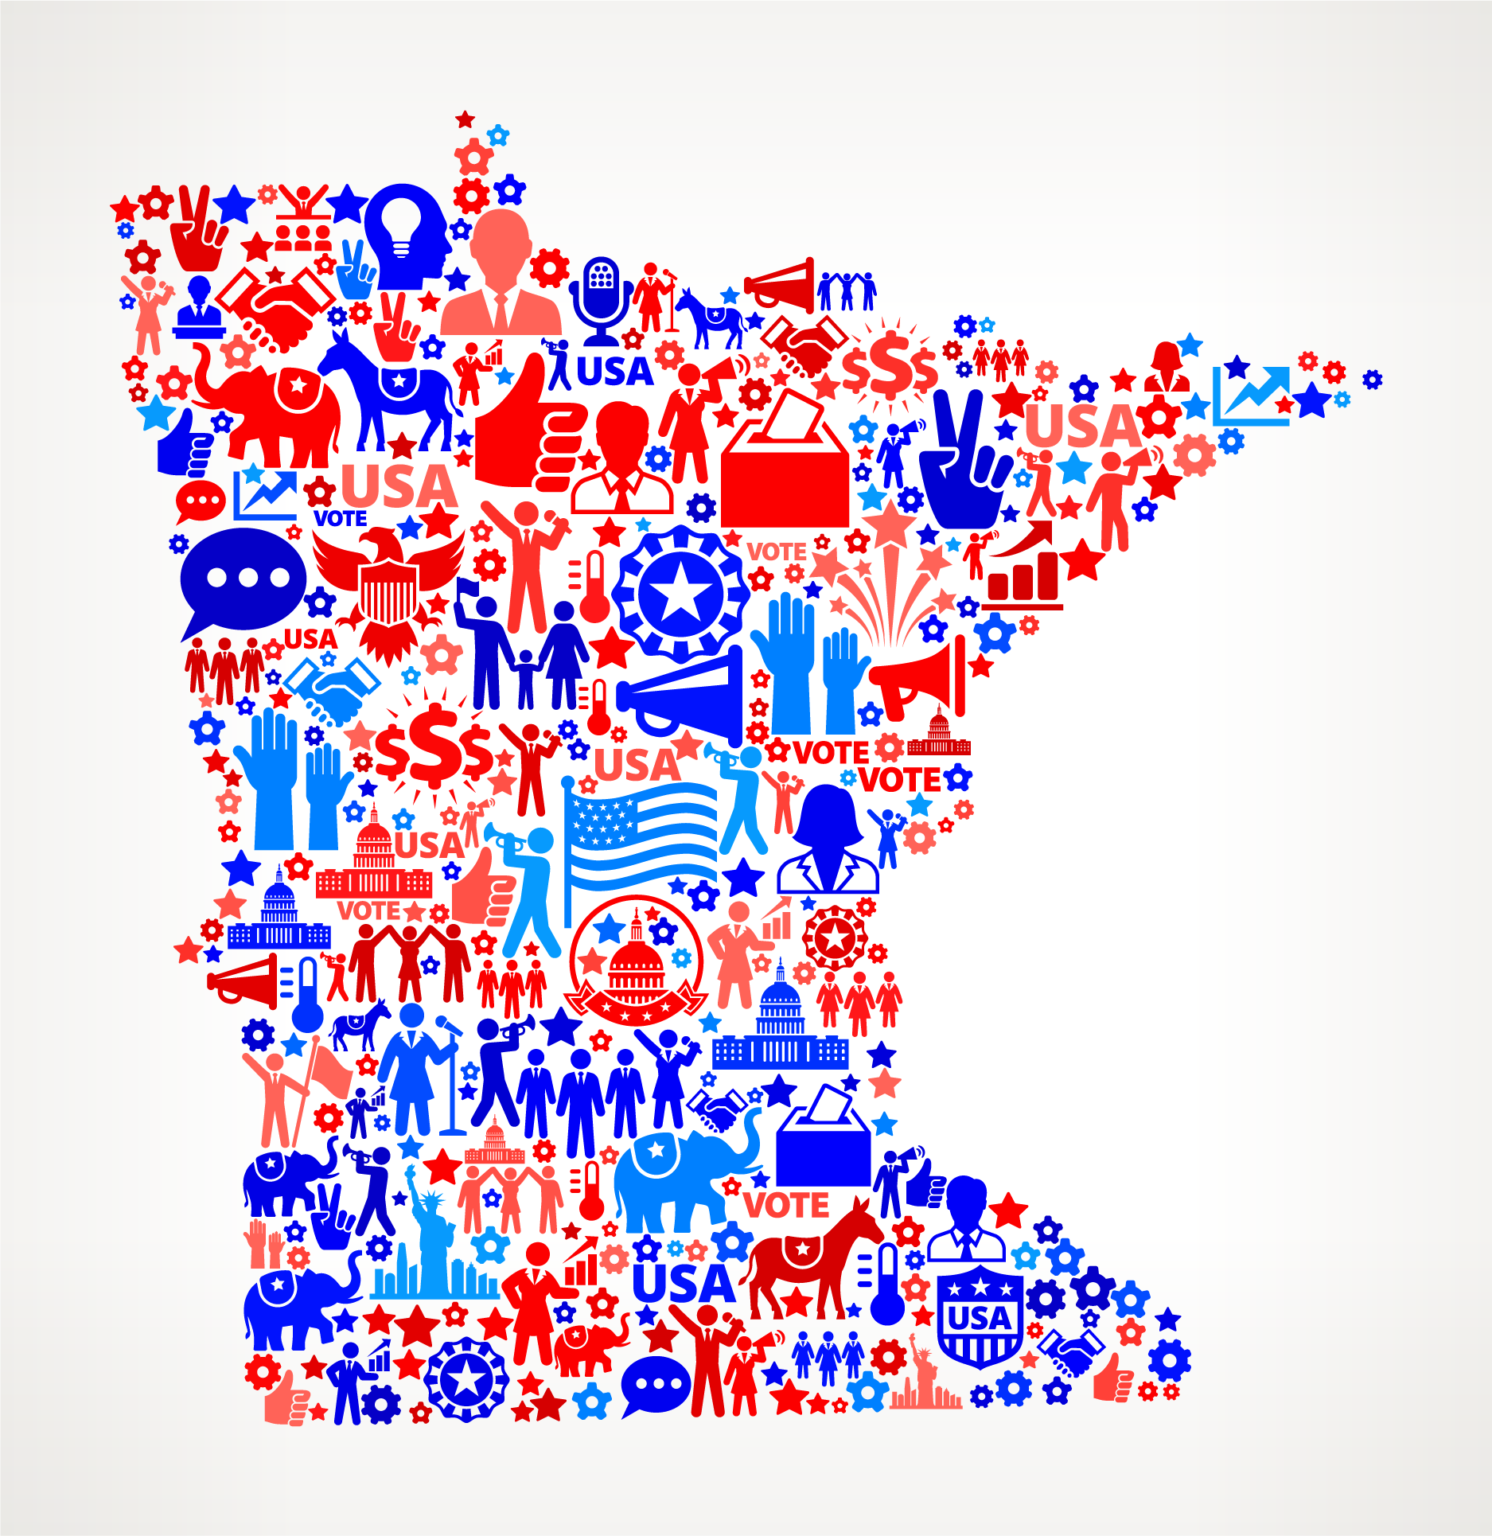 iStock-504186172 - Minnesota voting icons